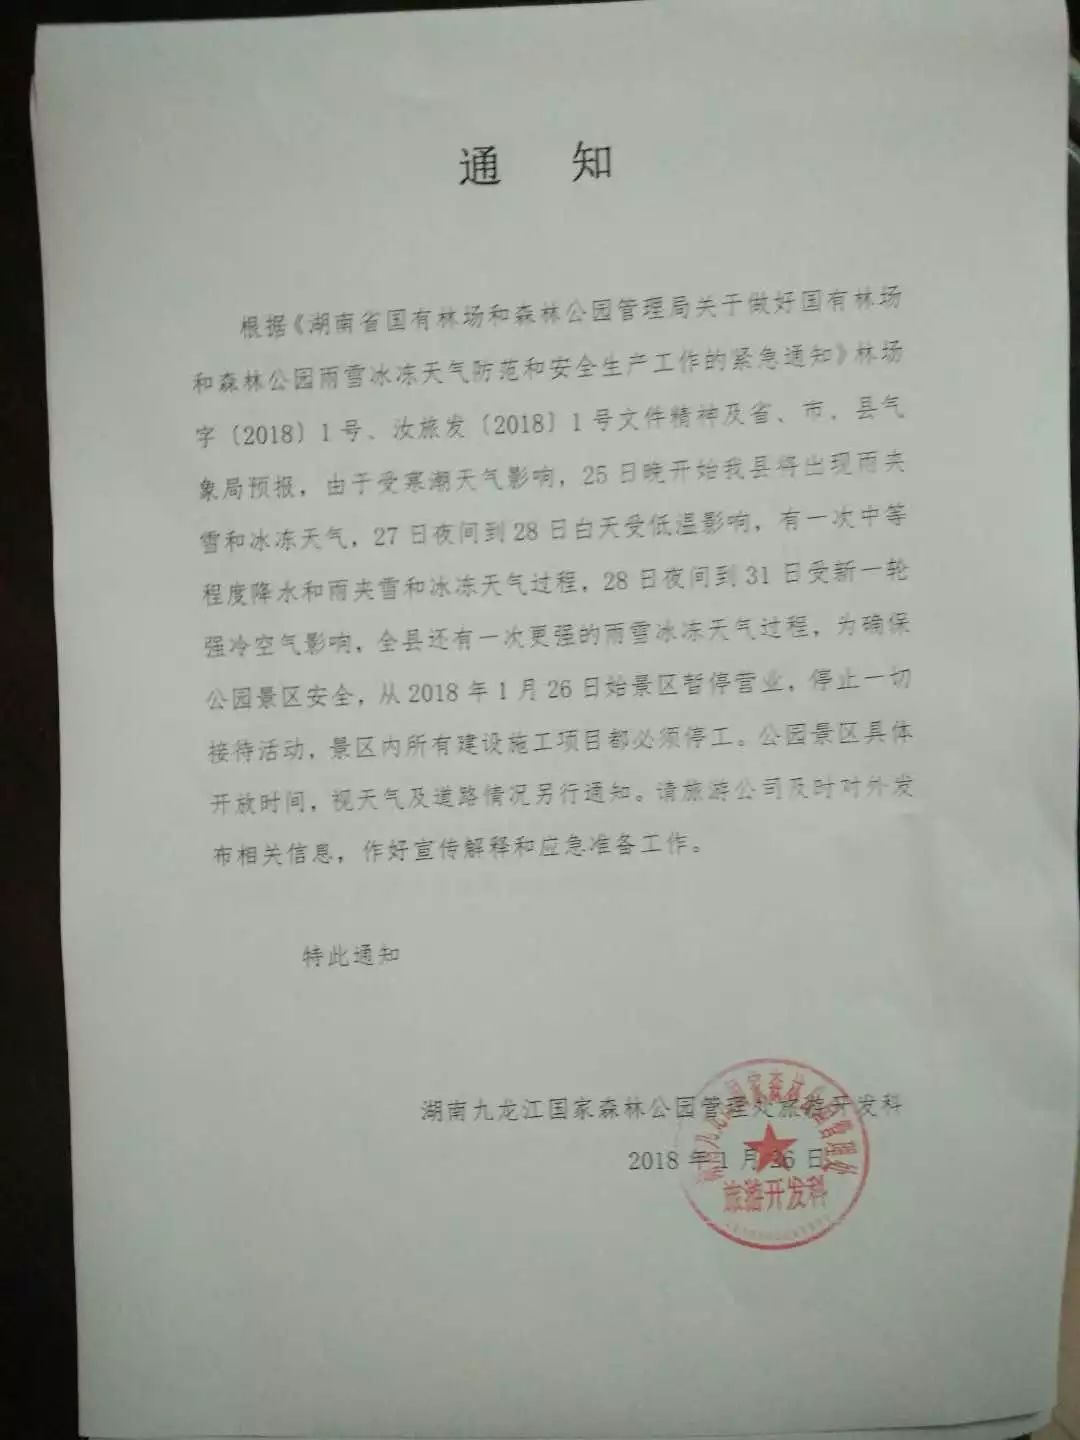 紧急通知 | 自1月26日起,九龙江森林公园景区暂停营业!